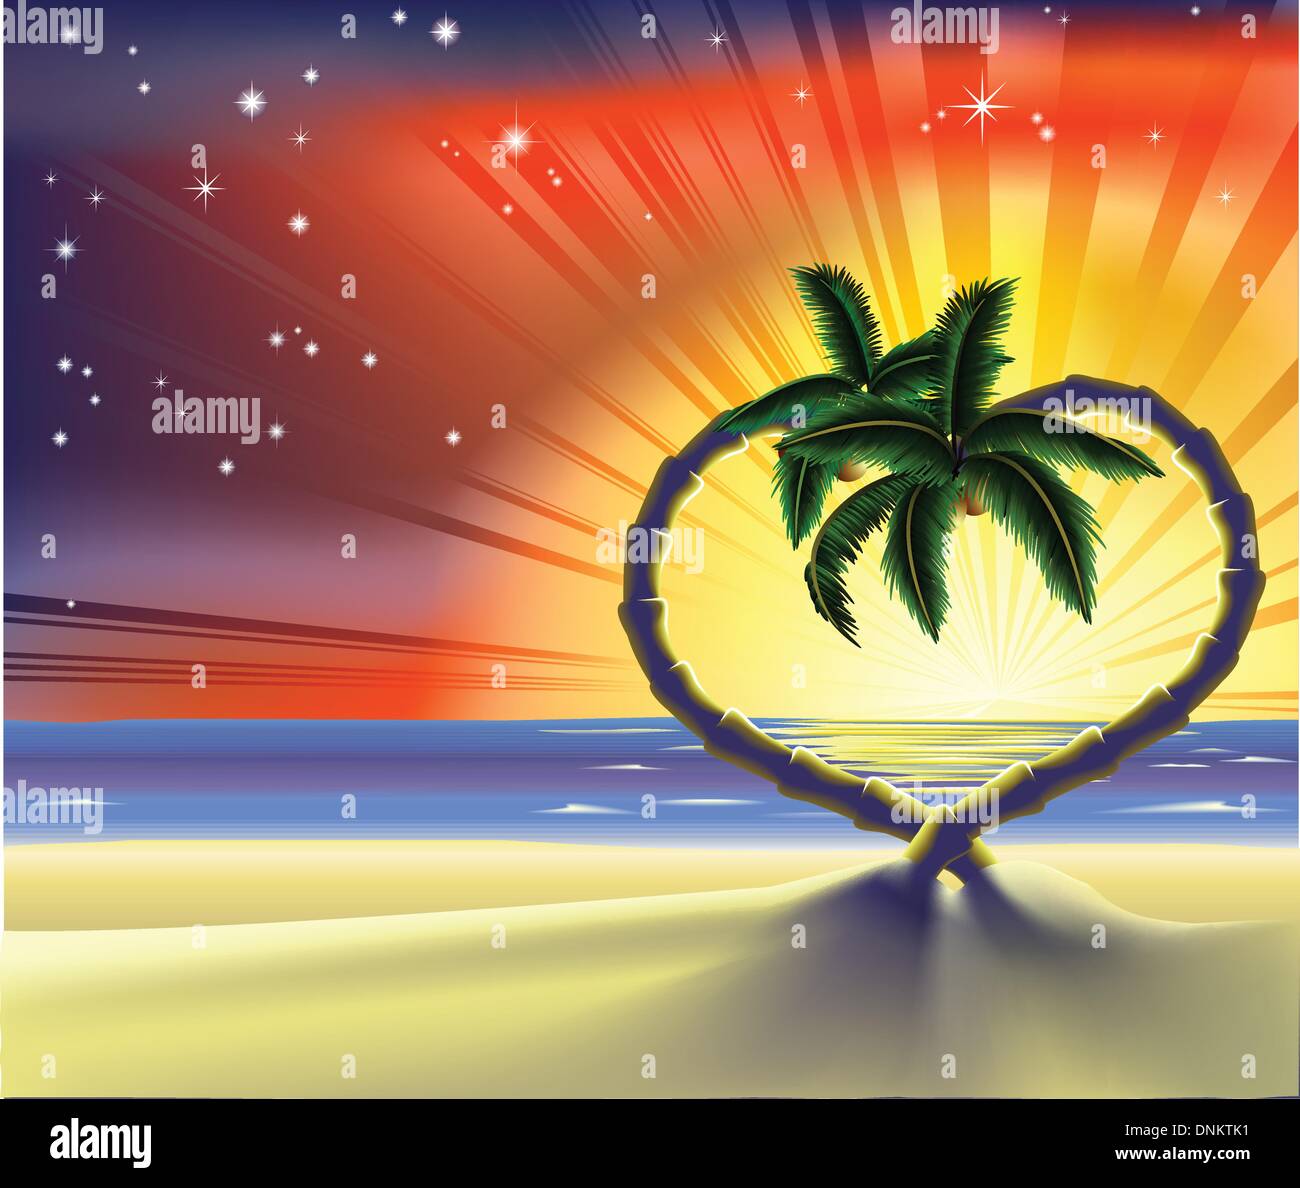 Beispiel für einen romantischen Strand-Szene mit herzförmigen Palmen bei Sonnenuntergang Stock Vektor